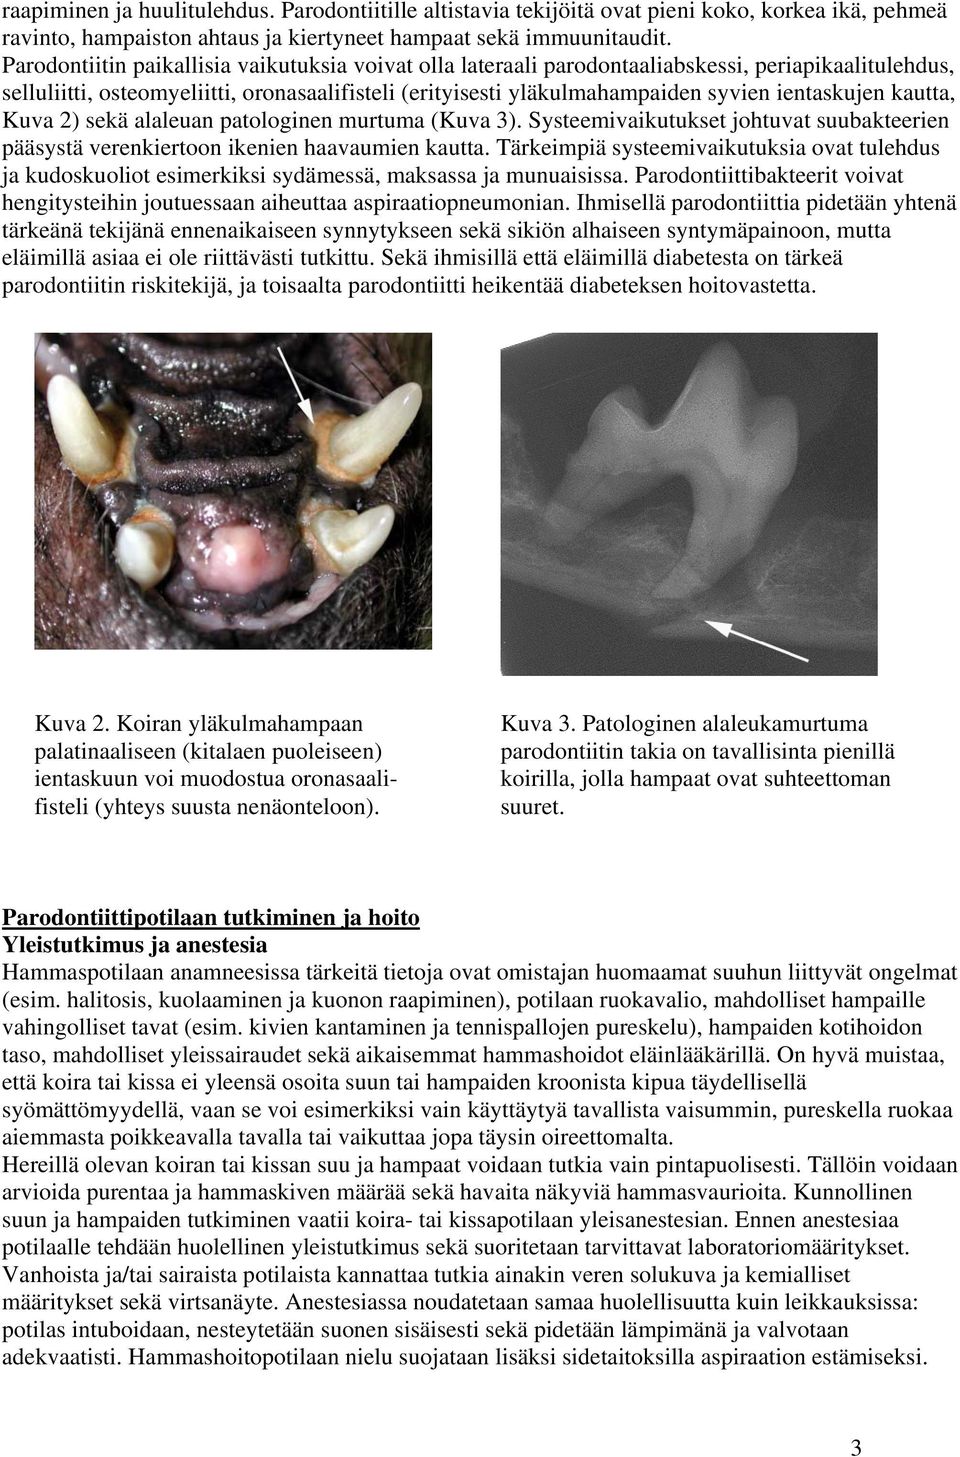 ientaskujen kautta, Kuva 2) sekä alaleuan patologinen murtuma (Kuva 3). Systeemivaikutukset johtuvat suubakteerien pääsystä verenkiertoon ikenien haavaumien kautta.